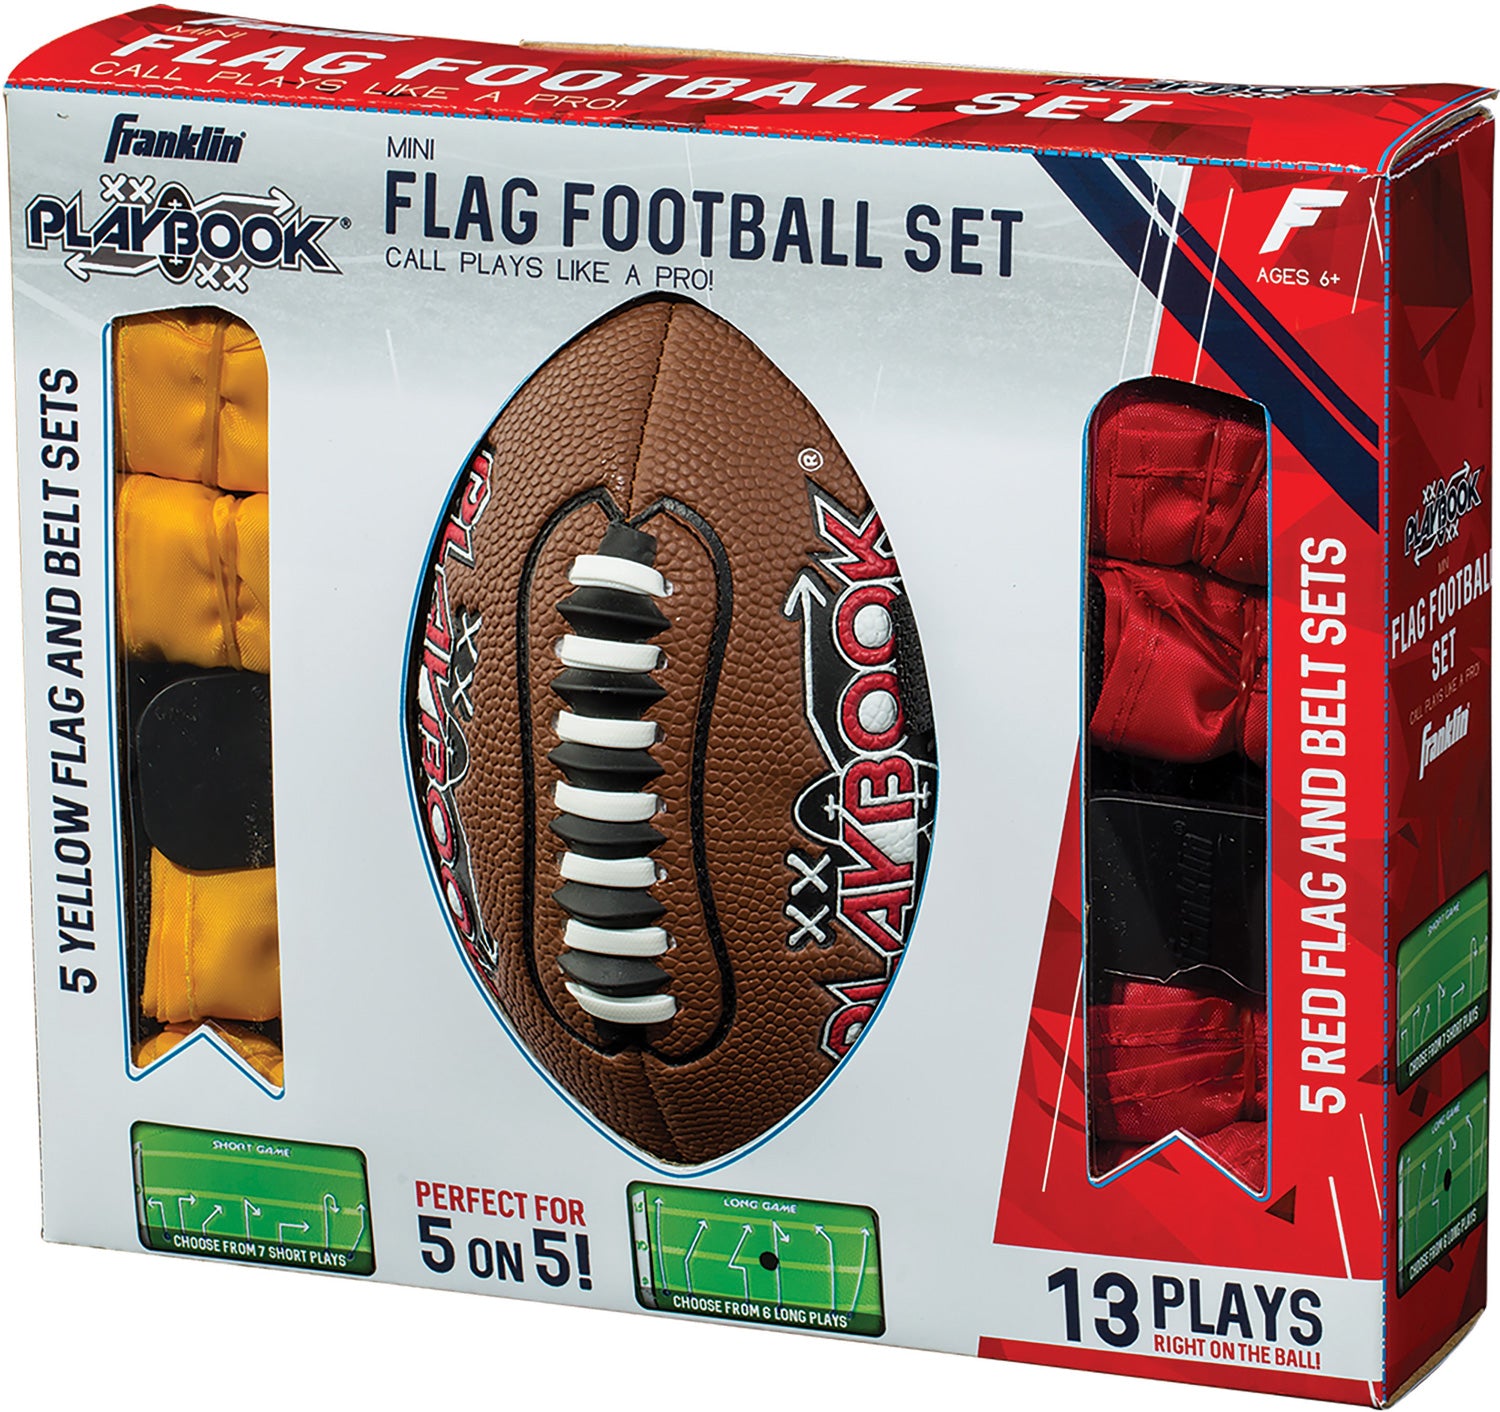 Playbook Mini Flag Football Set